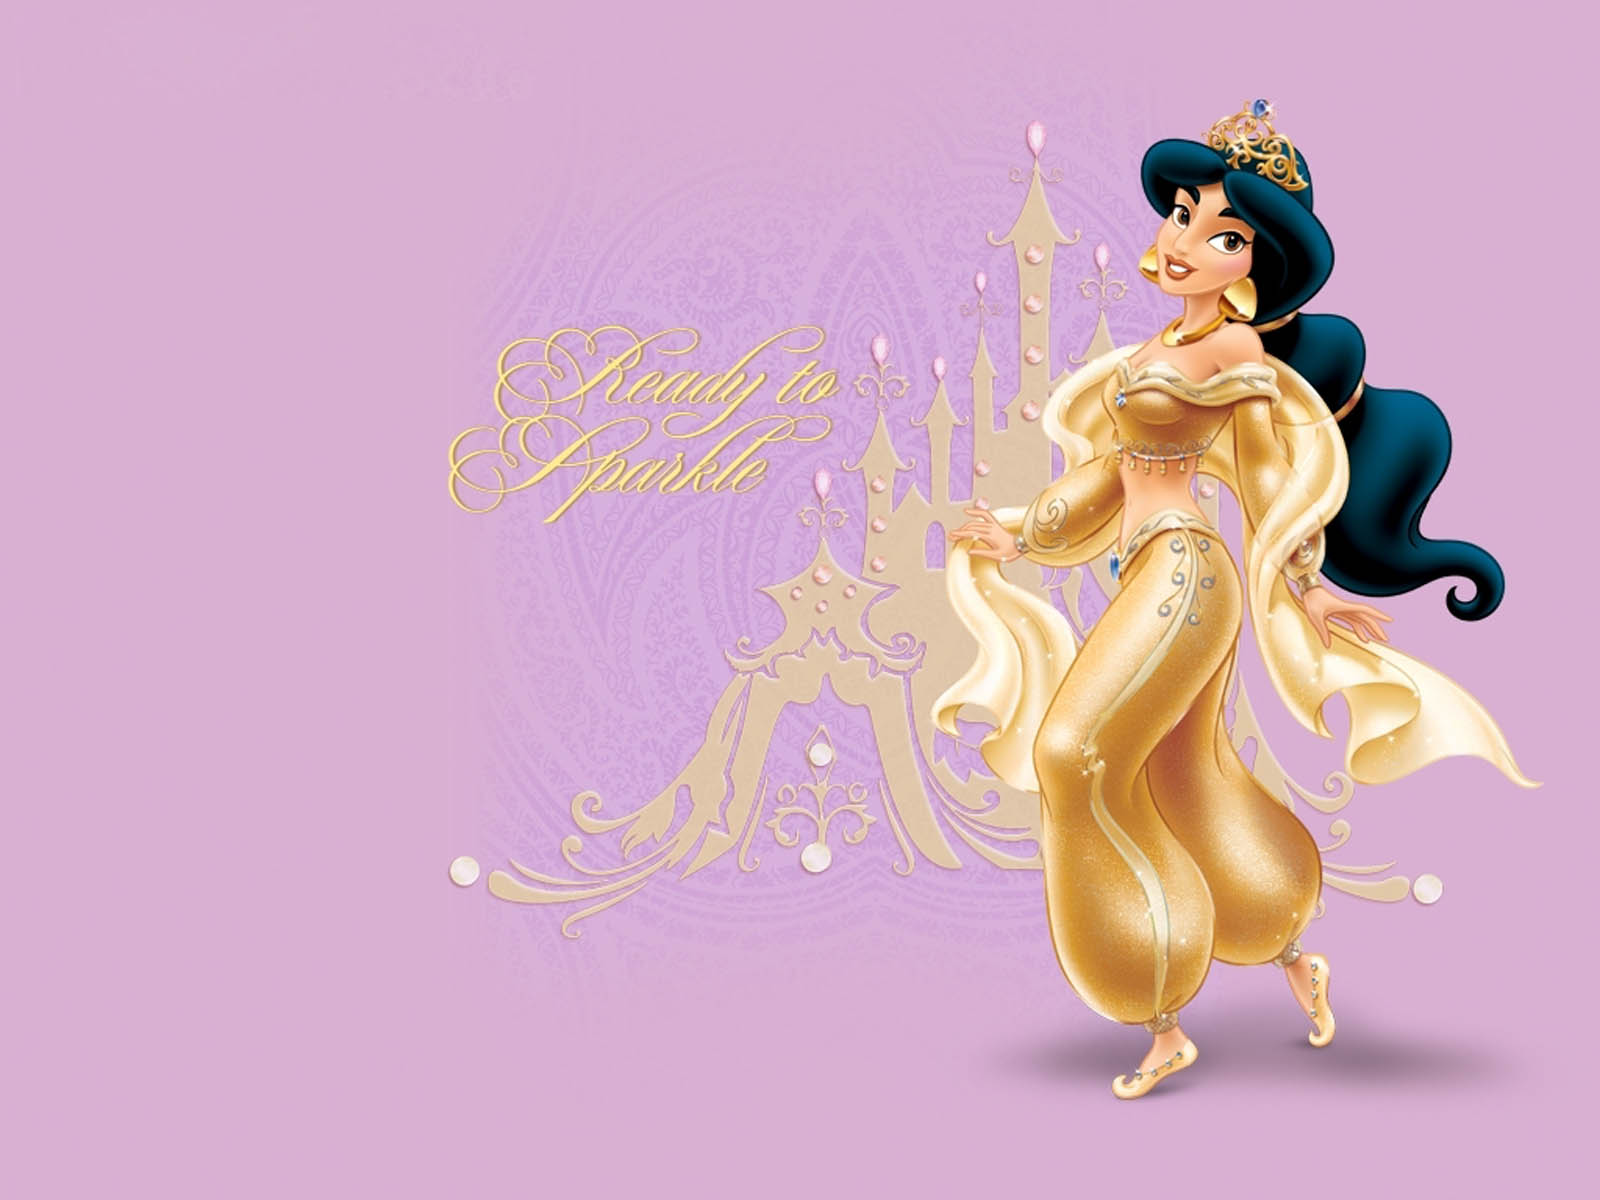  Disney Princess Jasmine Wallpapers Disney Princess Jasmine Desktop